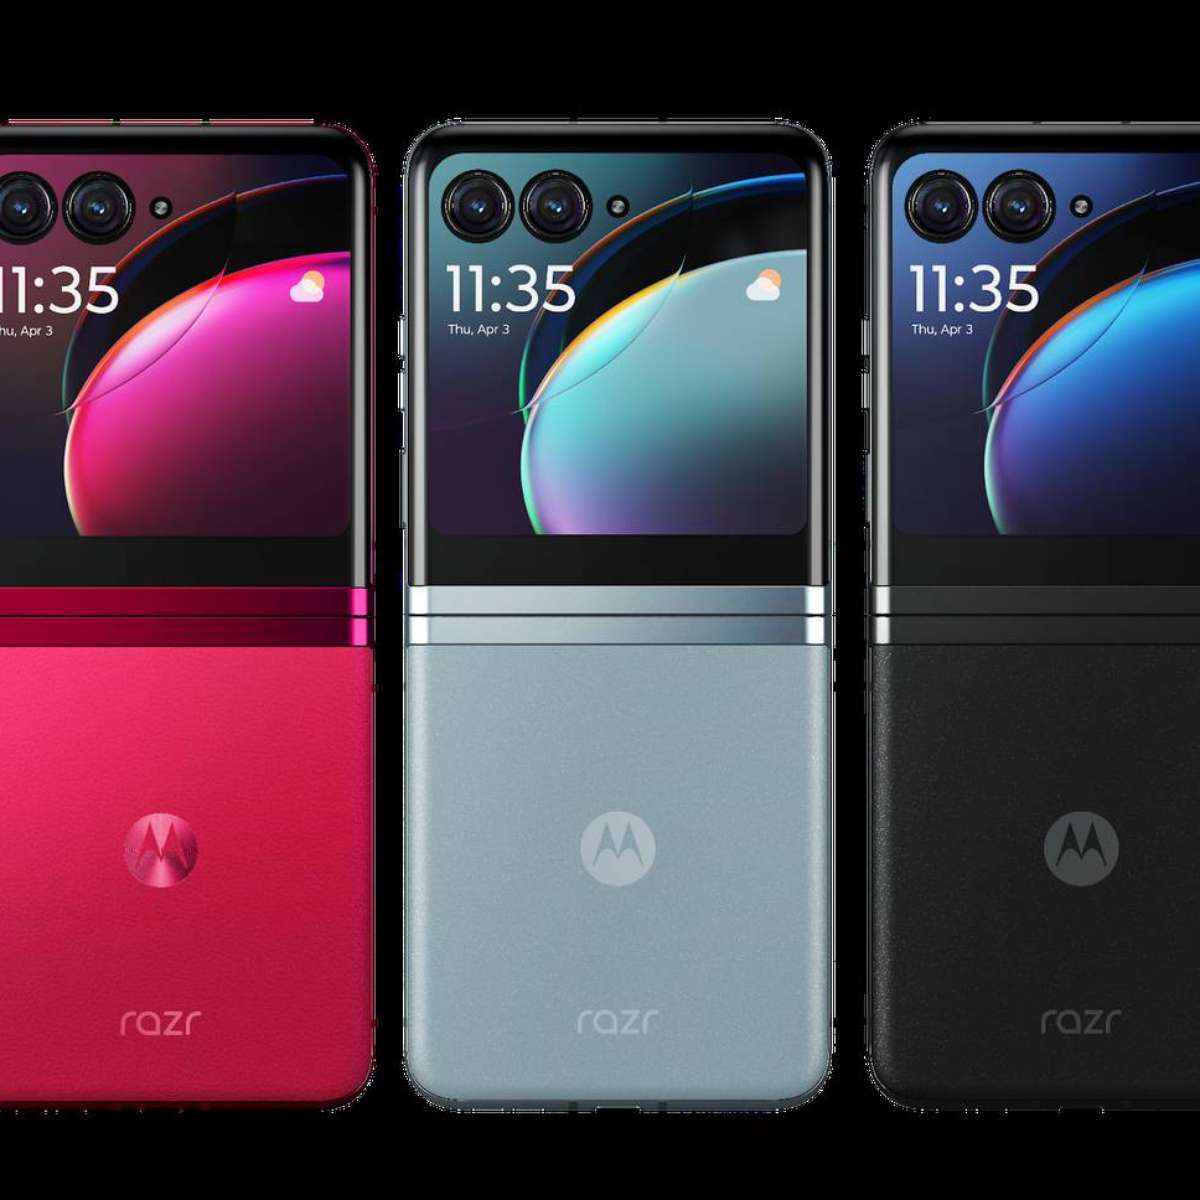 Galaxy Z Flip 5 vs Motorola Razr 40 Ultra: qual o melhor celular dobrável  de 2023? - TecMundo